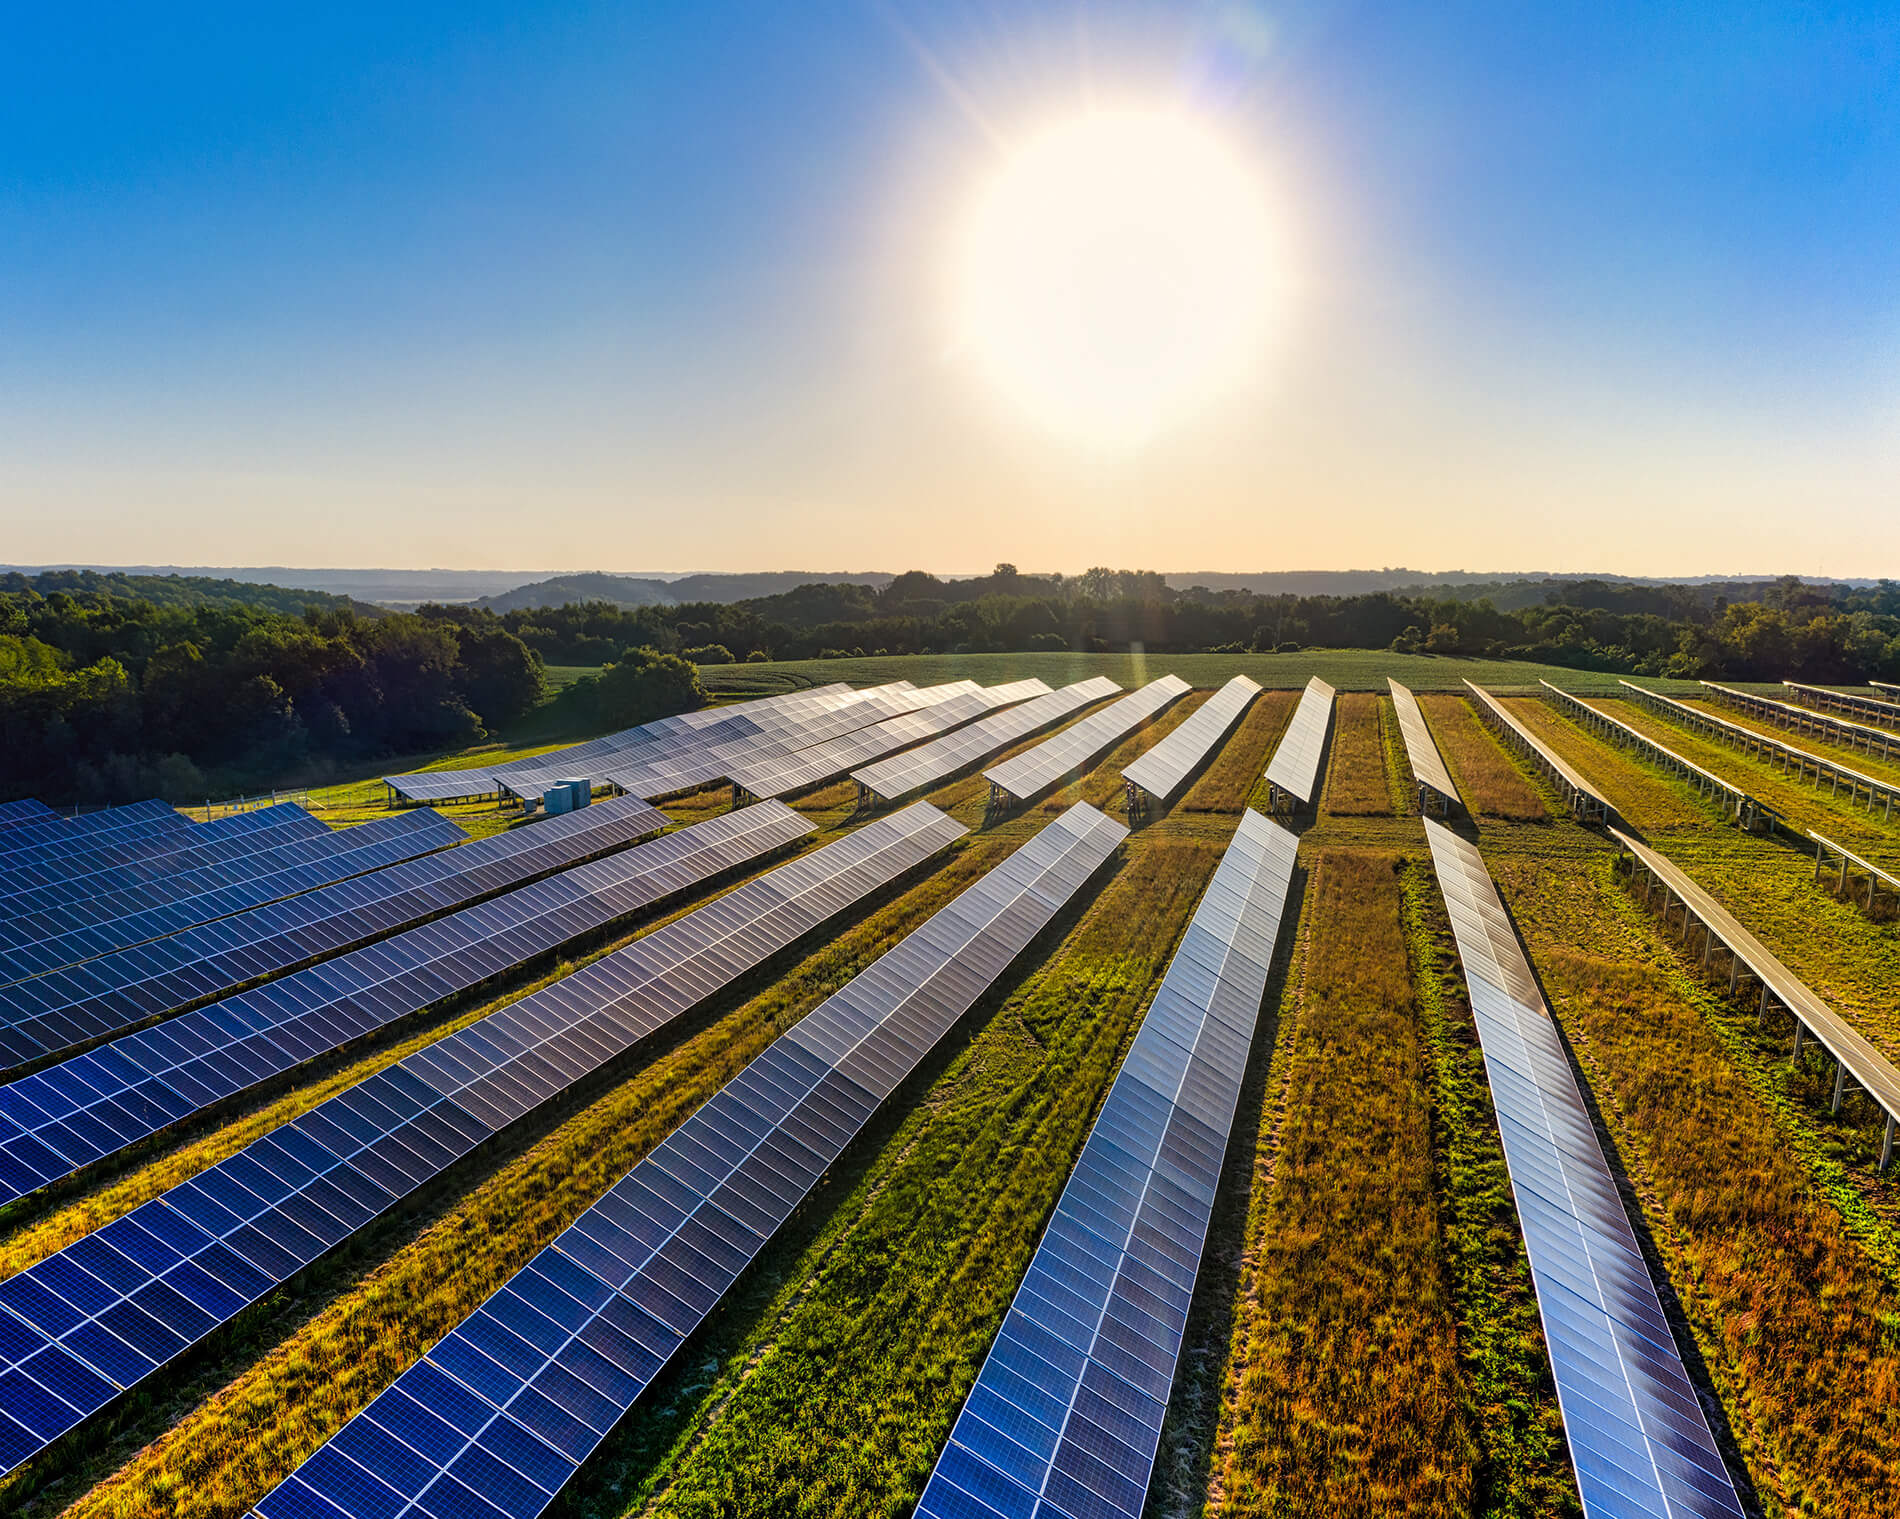 Miből finanszírozhatjuk a napelemeket?